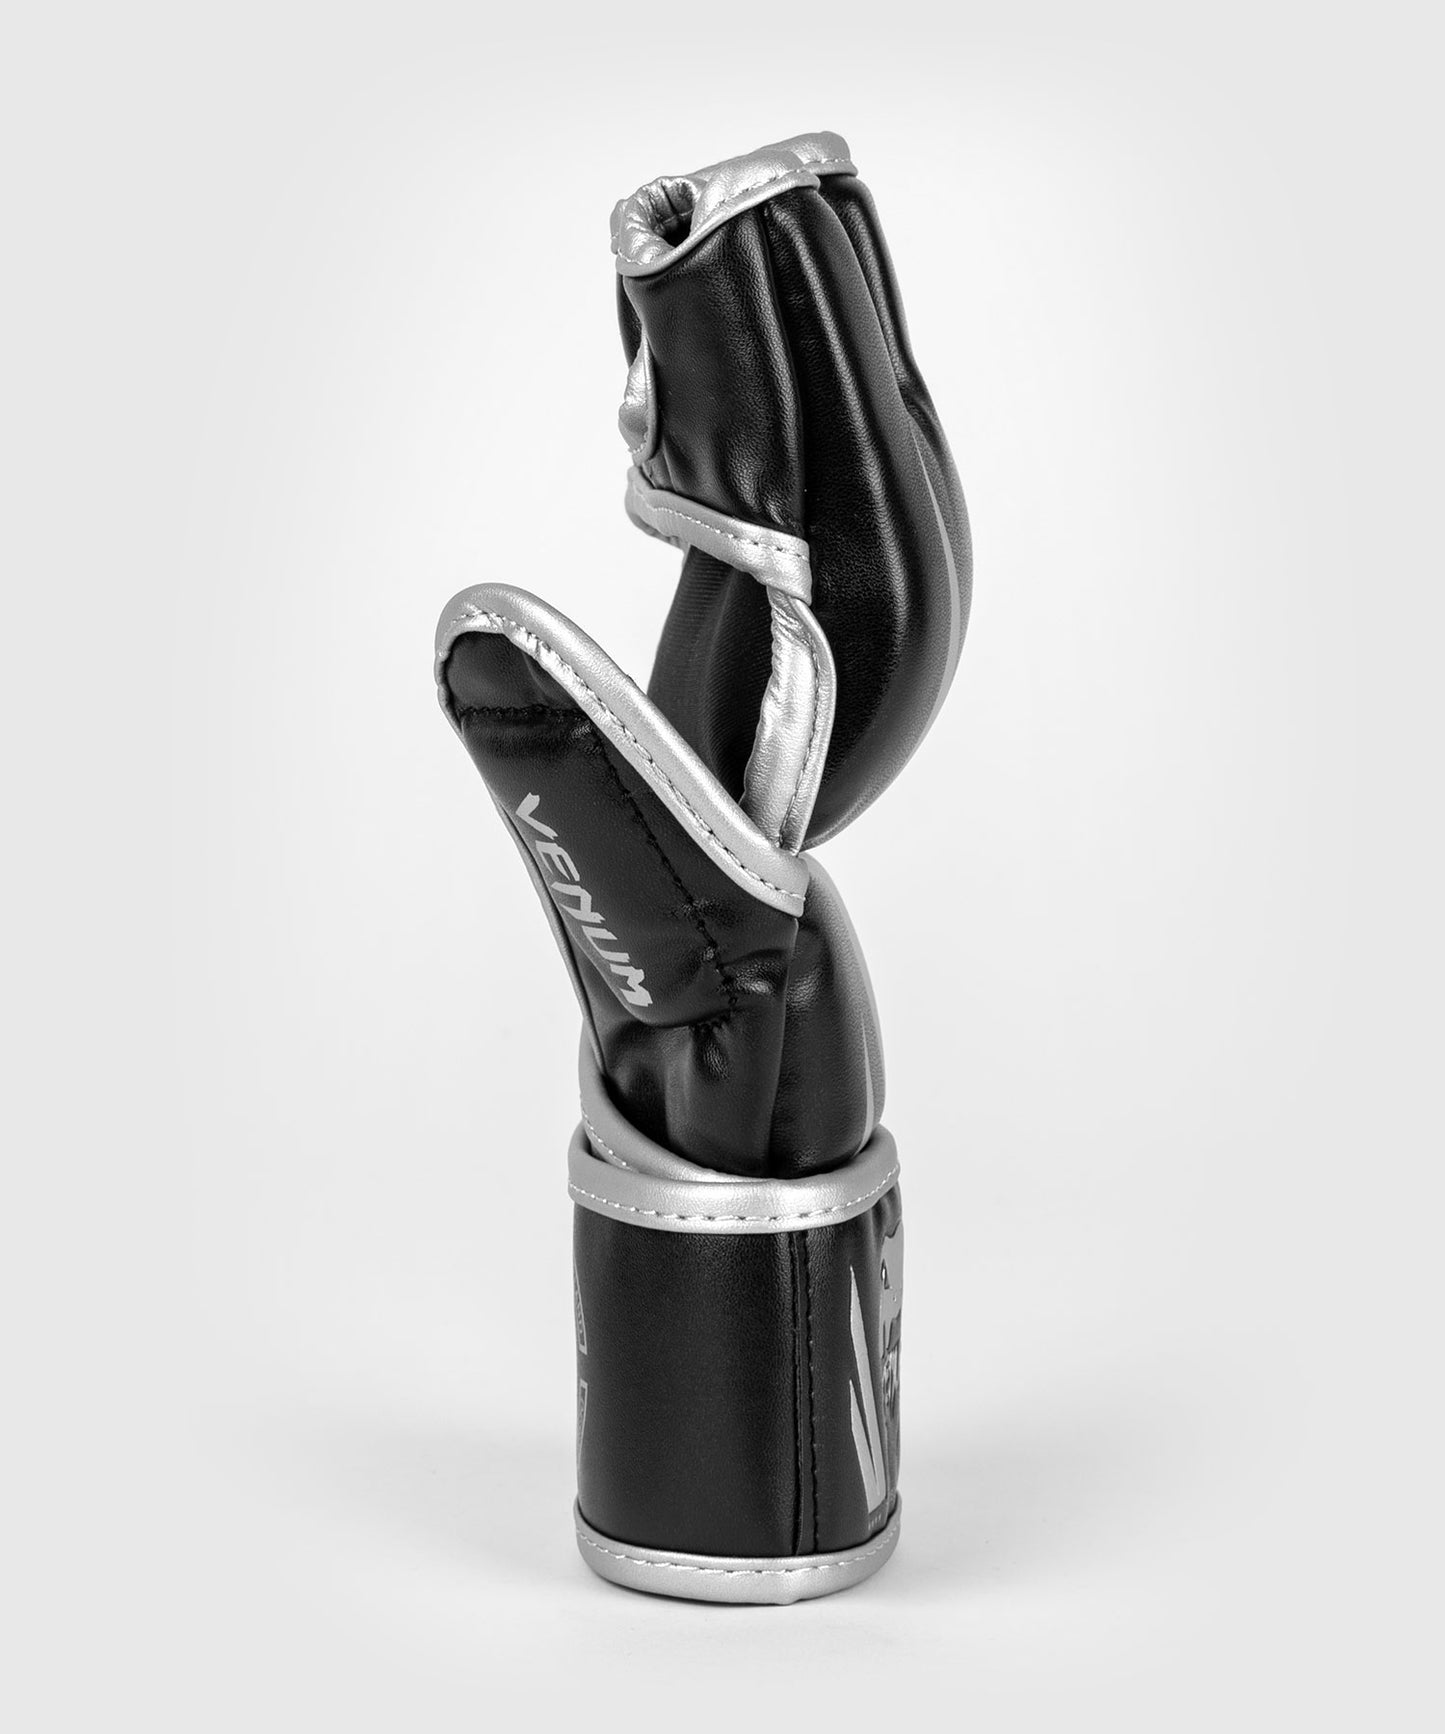 Venum Challenger 2.0 MMA-Handschuhe – Schwarz/Silber